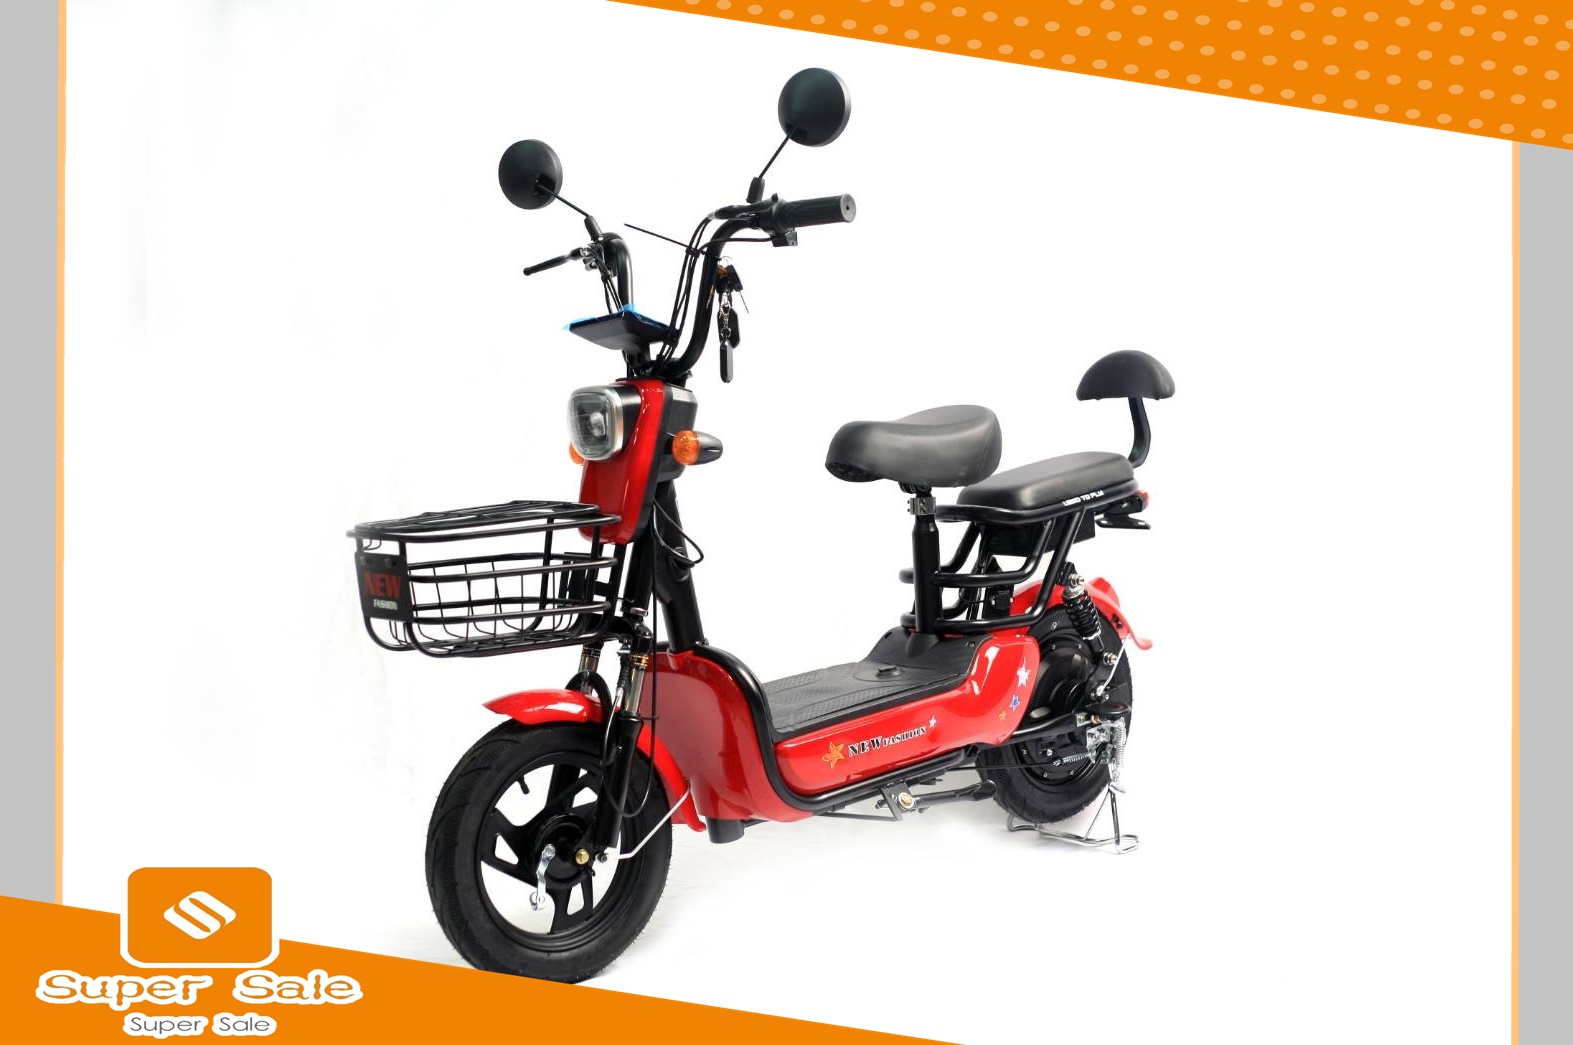 รถจักรยานไฟฟ้า จักรยานไฟฟ้า2021จักรยานไฟฟ้า electric bike สกู๊ตเตอร์ไฟฟ้า e-scooter ขับขี่ง่ายสบาย แบบ 2 ที่นั่งSupersale รุ่นU2015